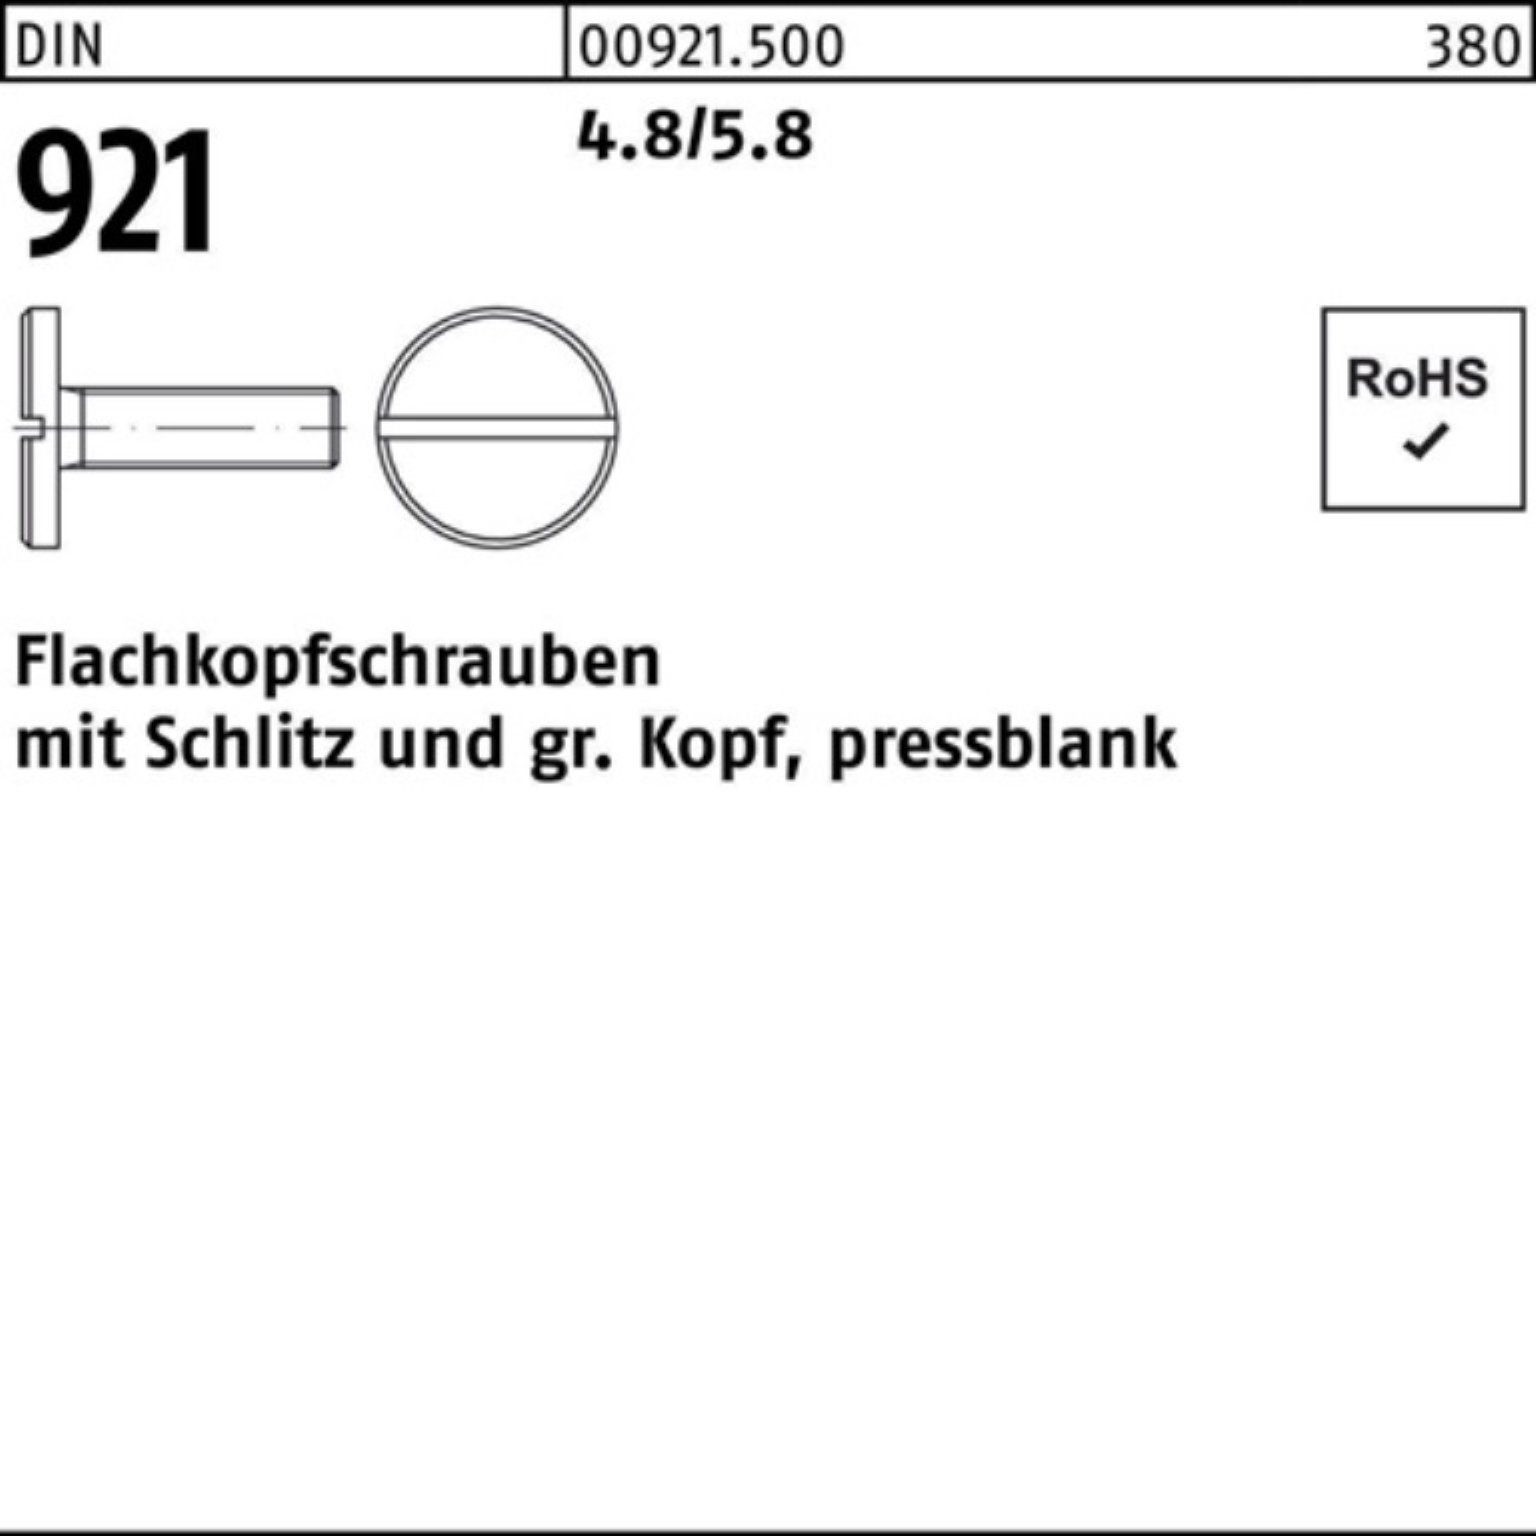 Reyher Schraube 100er Pack Flachkopfschraube DIN 921 Schlitz M6x 12 4.8/5.8 100 Stück